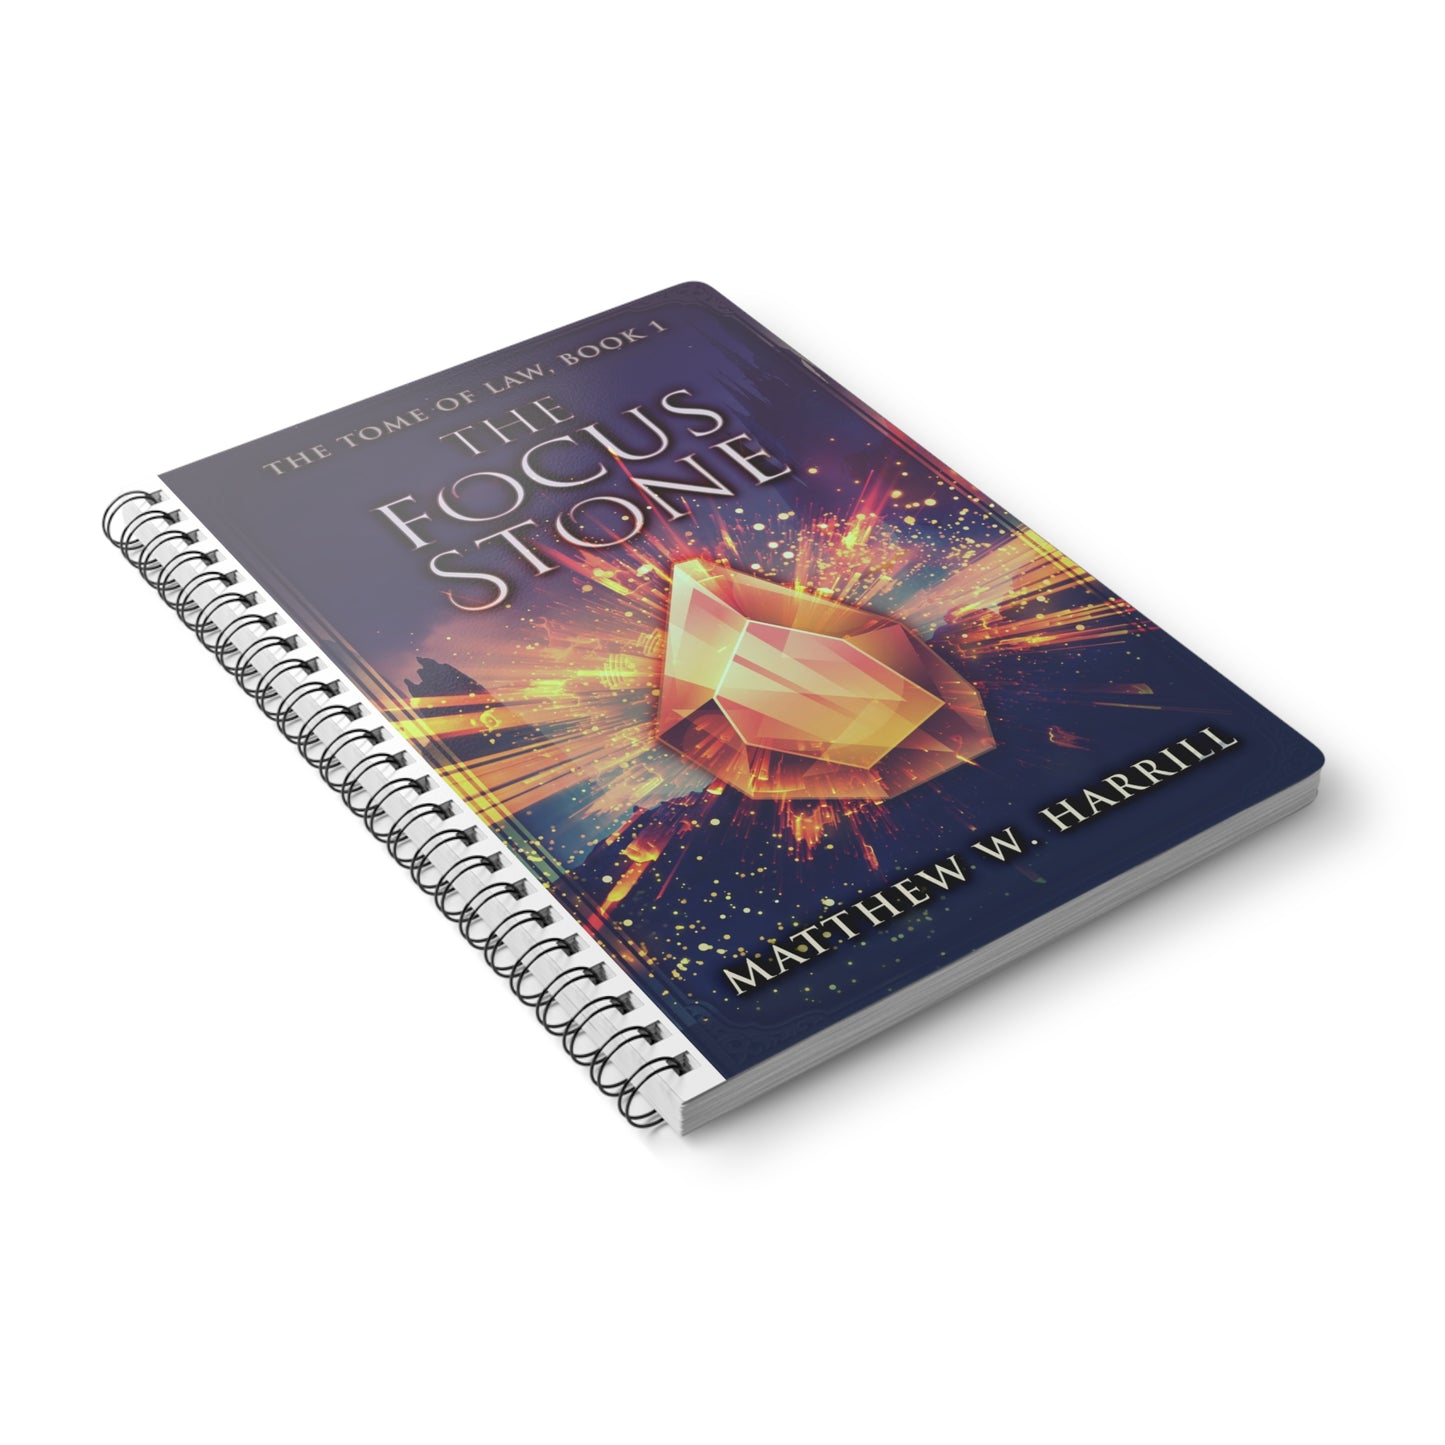 The Focus Stone - A5 Wirebound Notebook